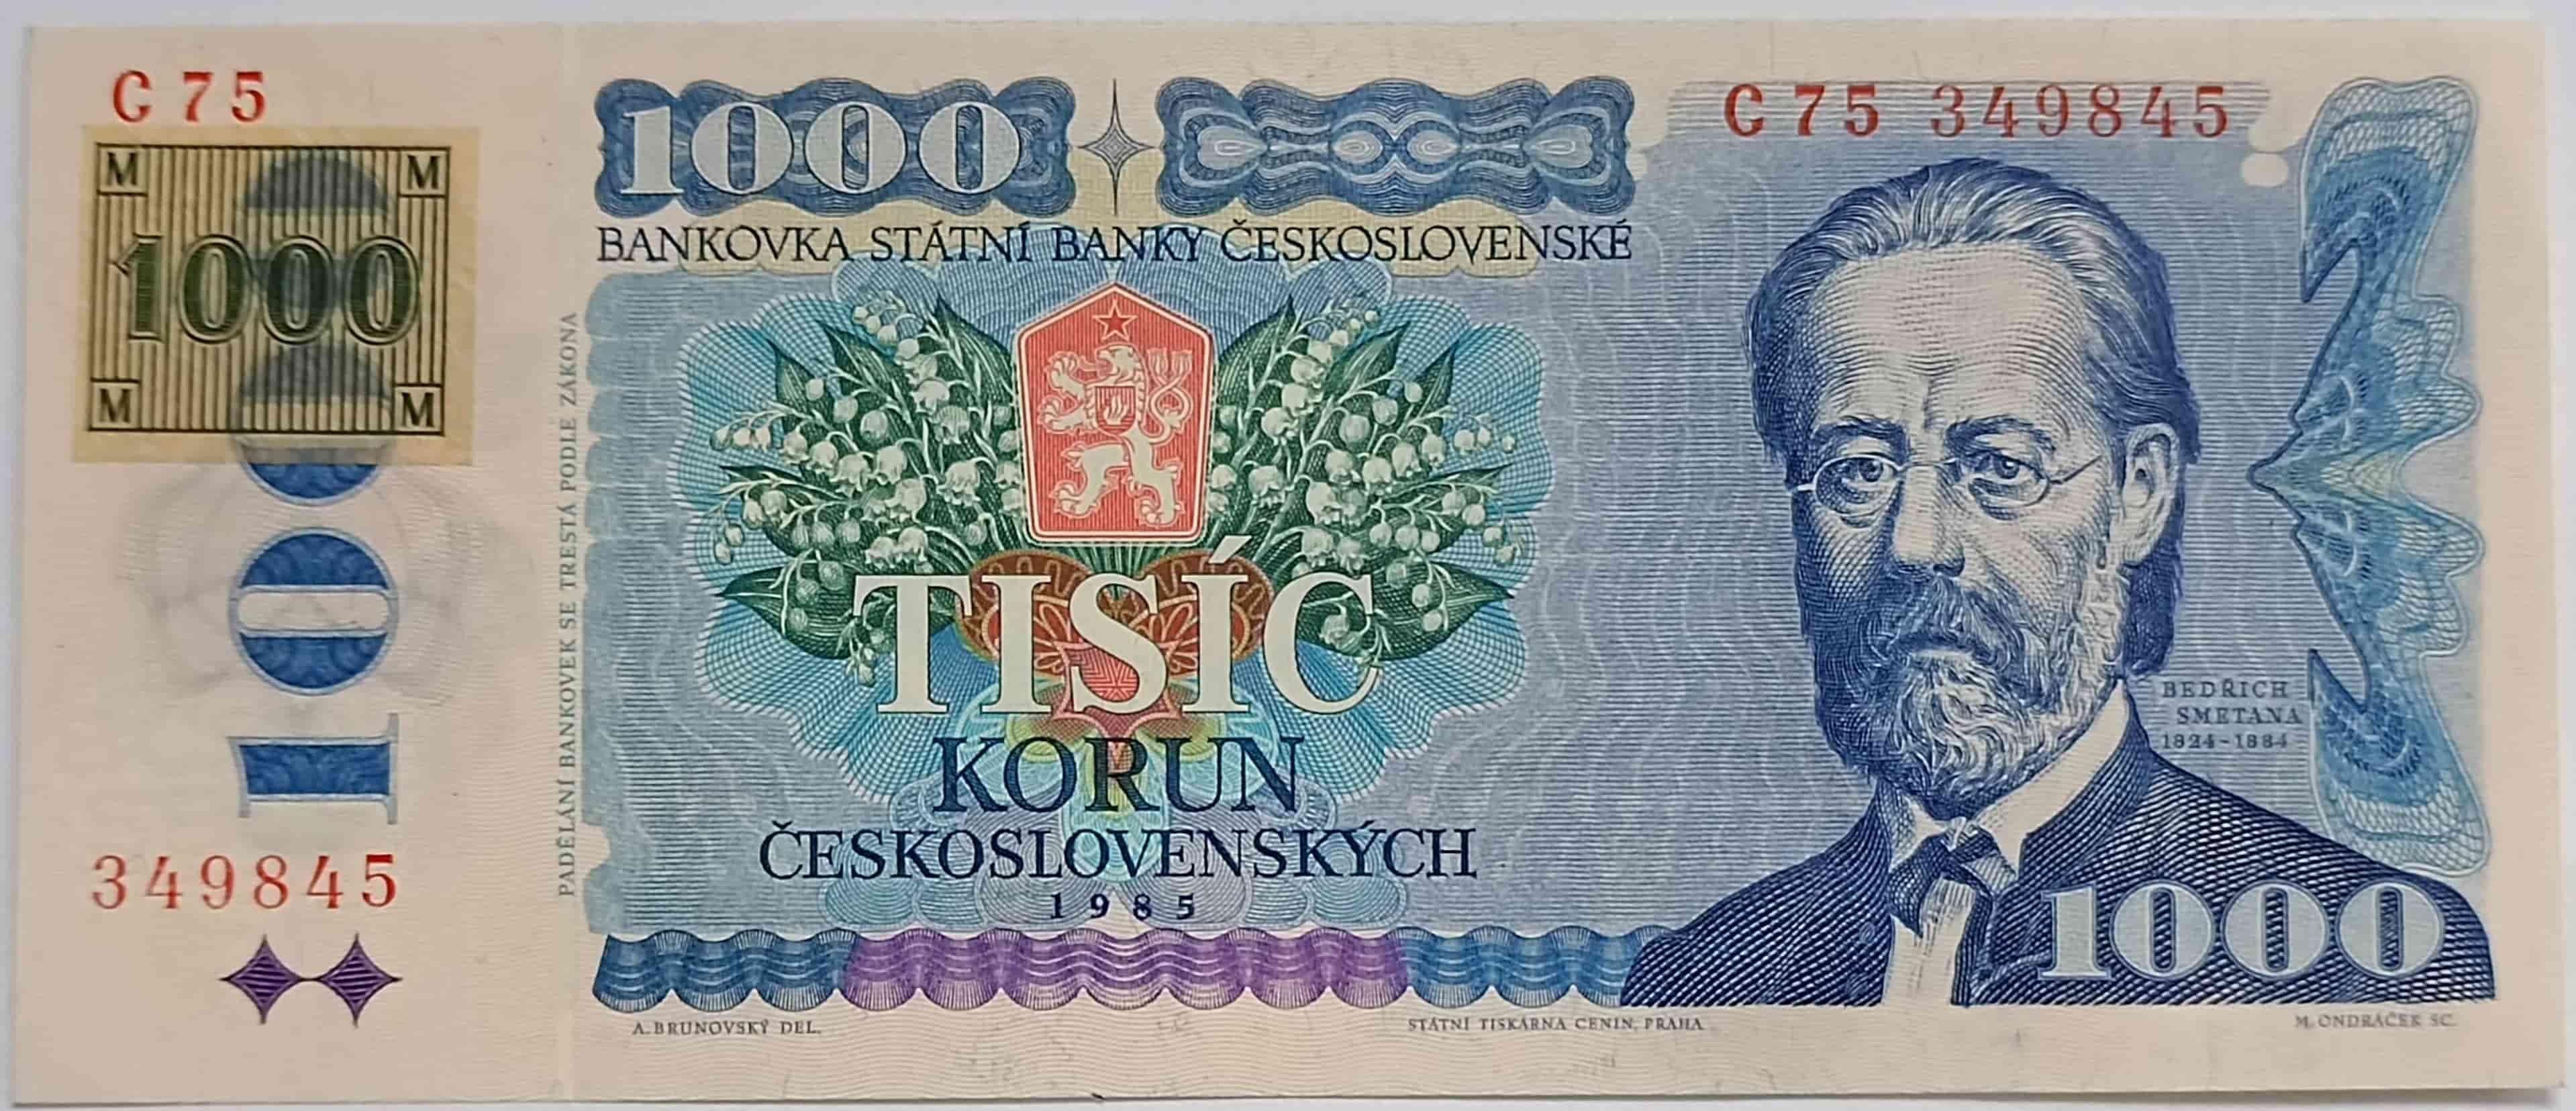 1000 Kčs 1985 C75 ČR kolok lepený